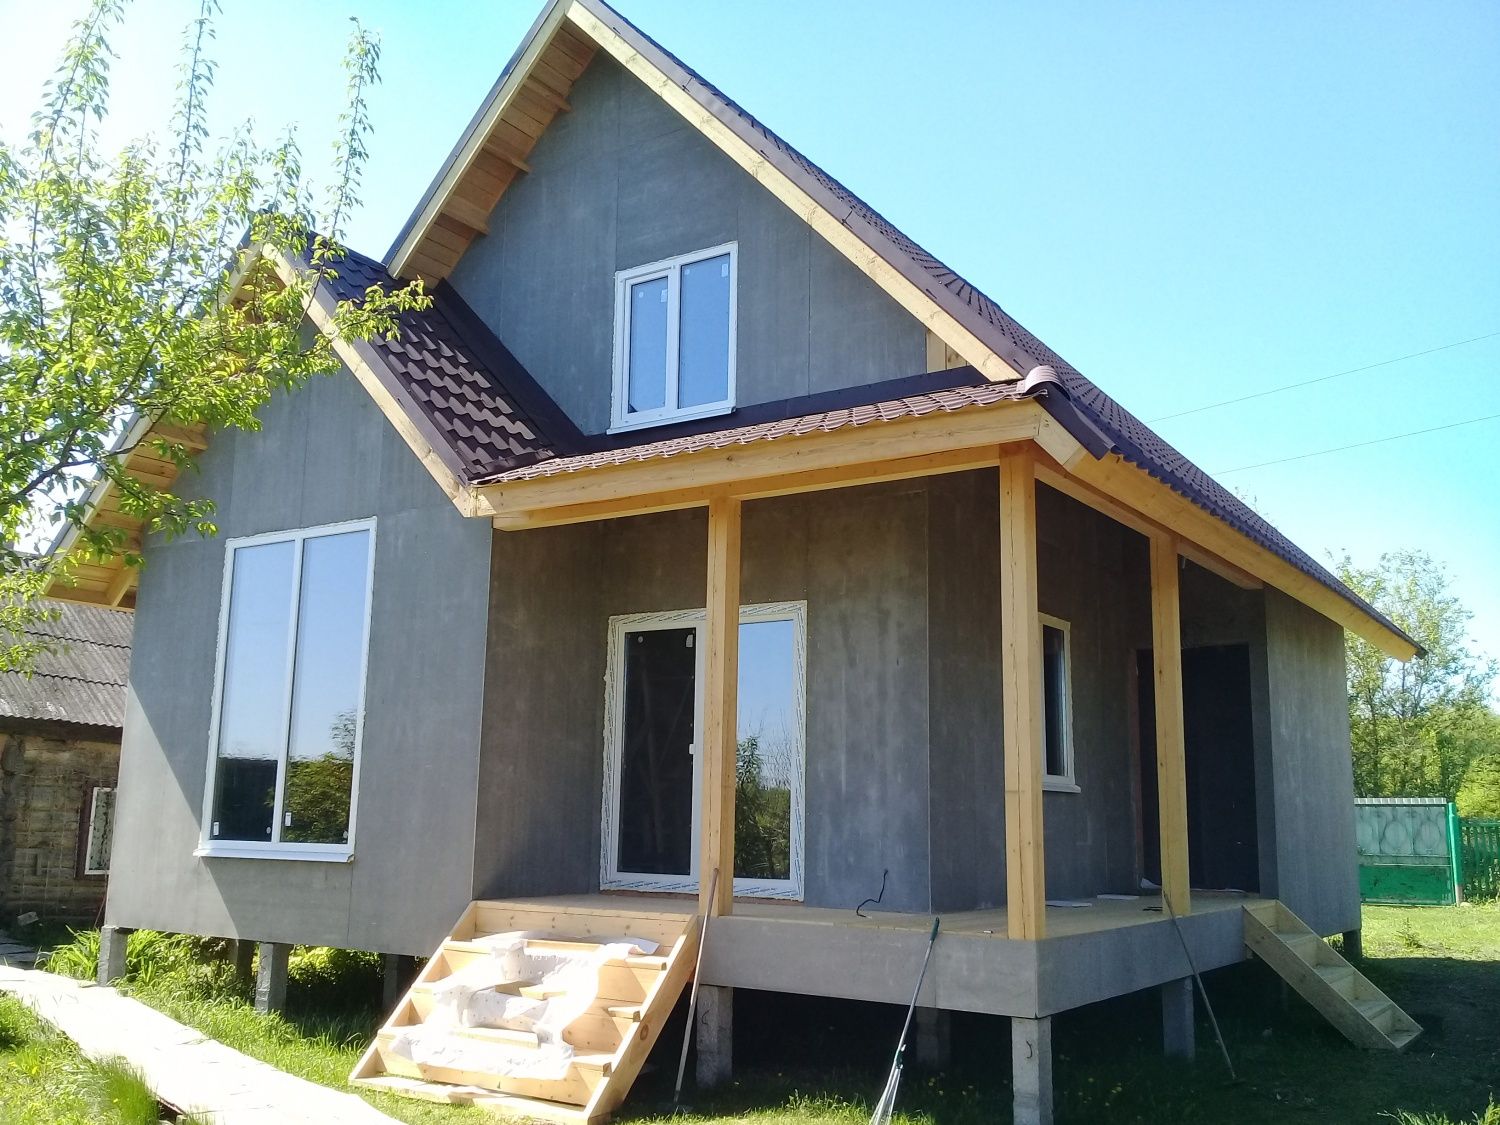  Завершено строительство дома в п.Новая деревня по проекту G-76.